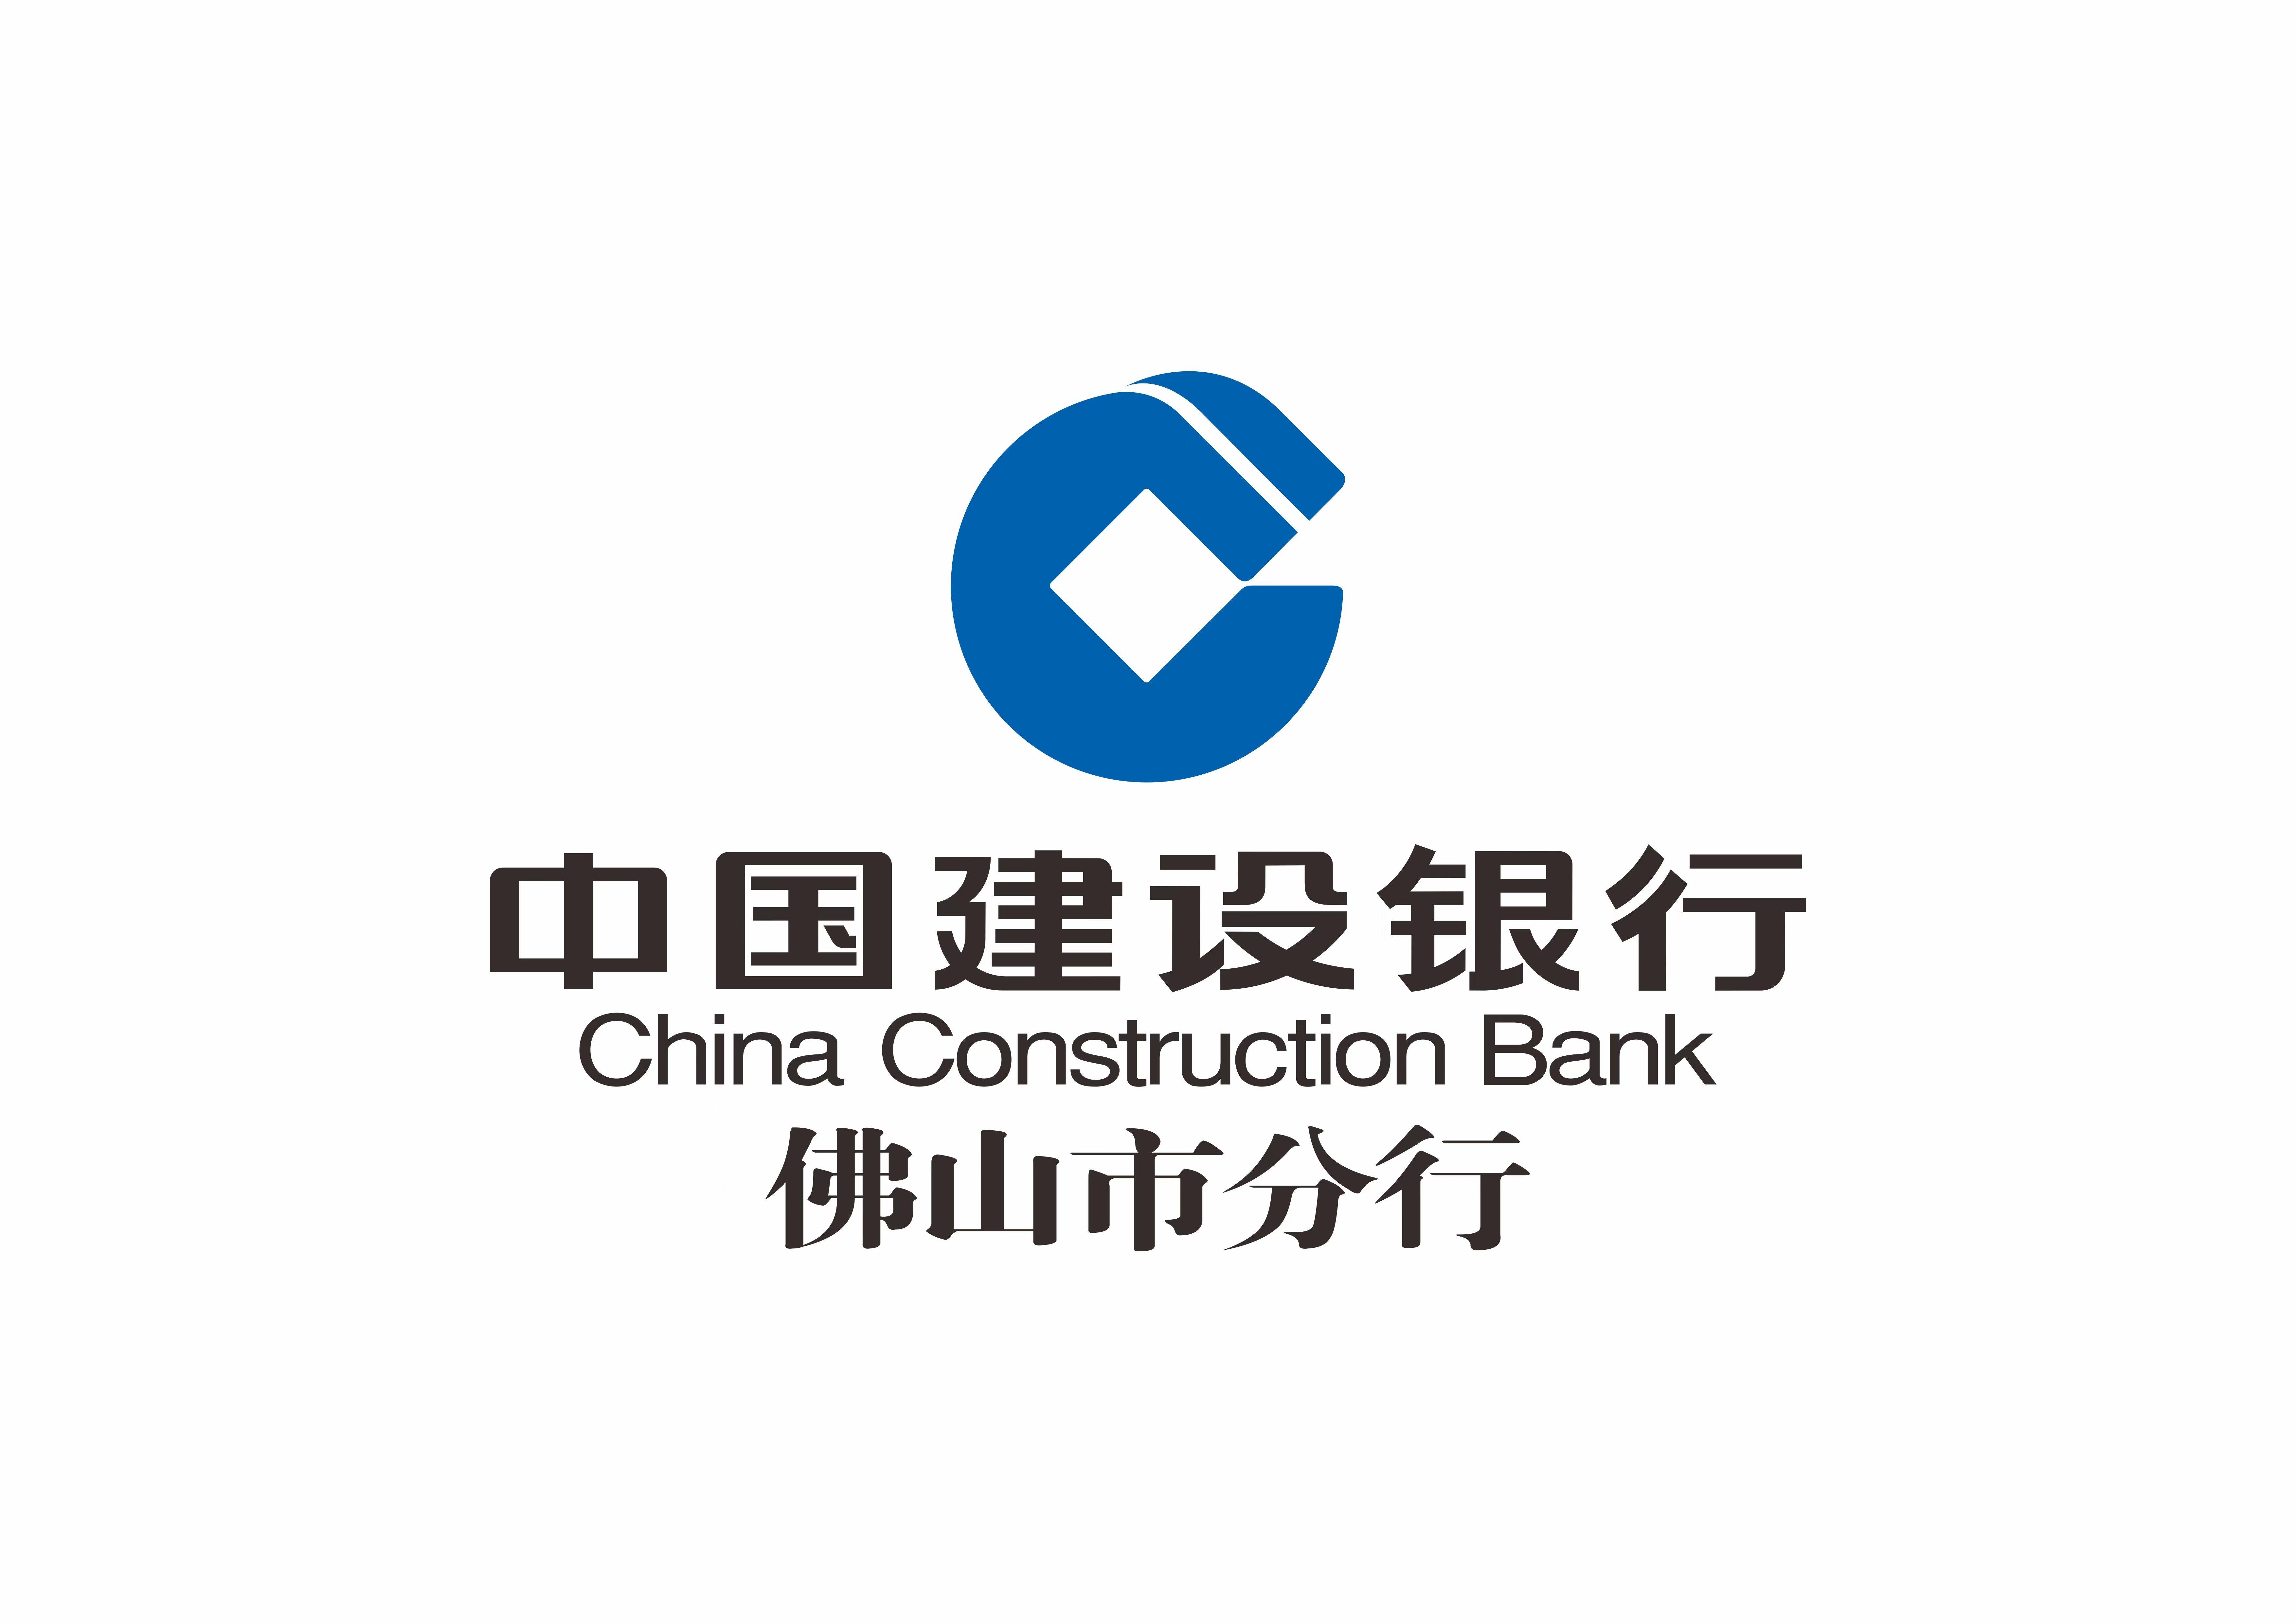 中国建设银行手机银行:中国建设银行佛山分行积极搭建乡村振兴服务体系-第1张图片-太平洋在线下载